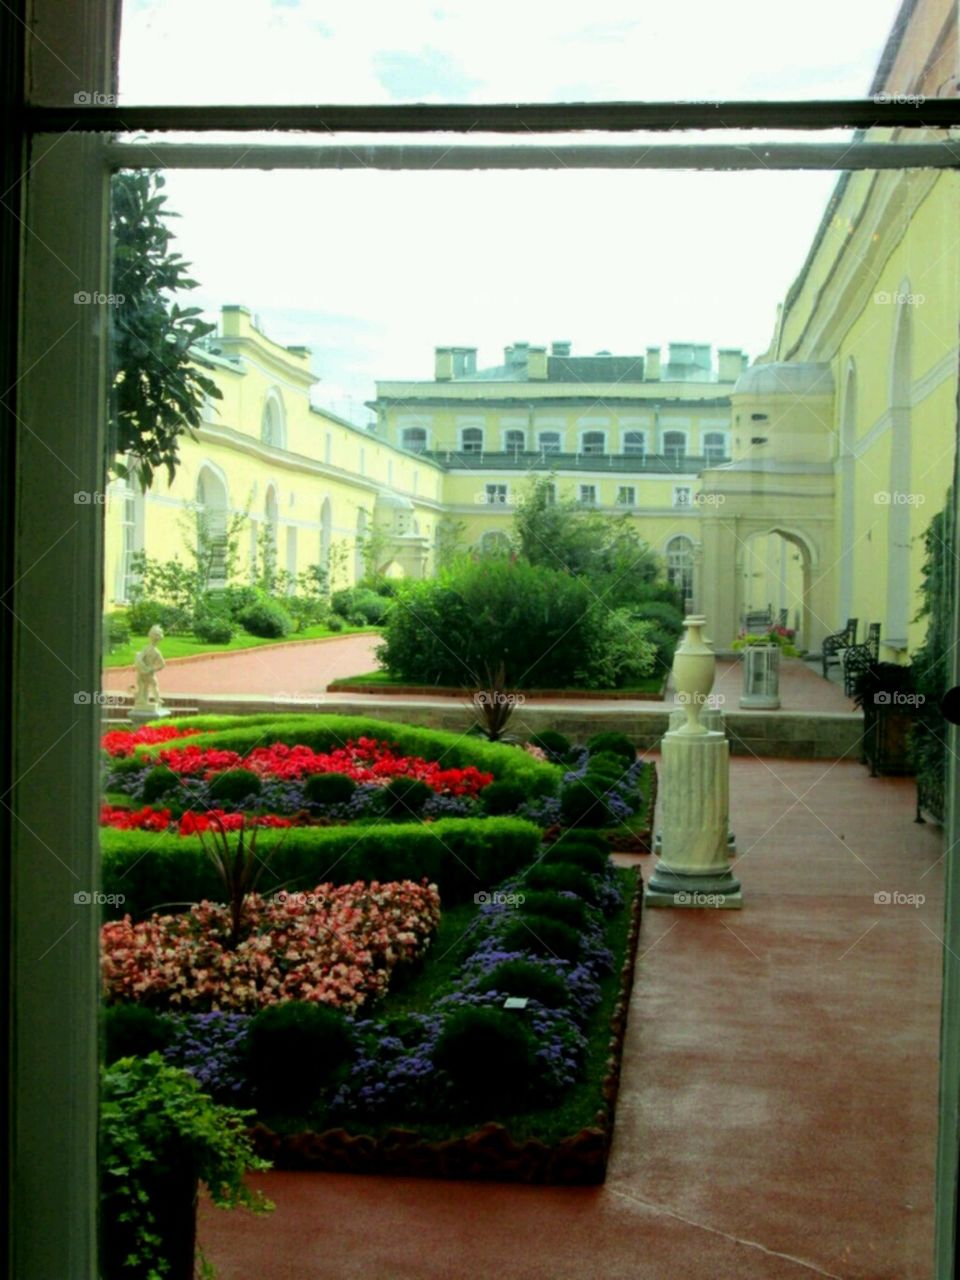 hermitage garden